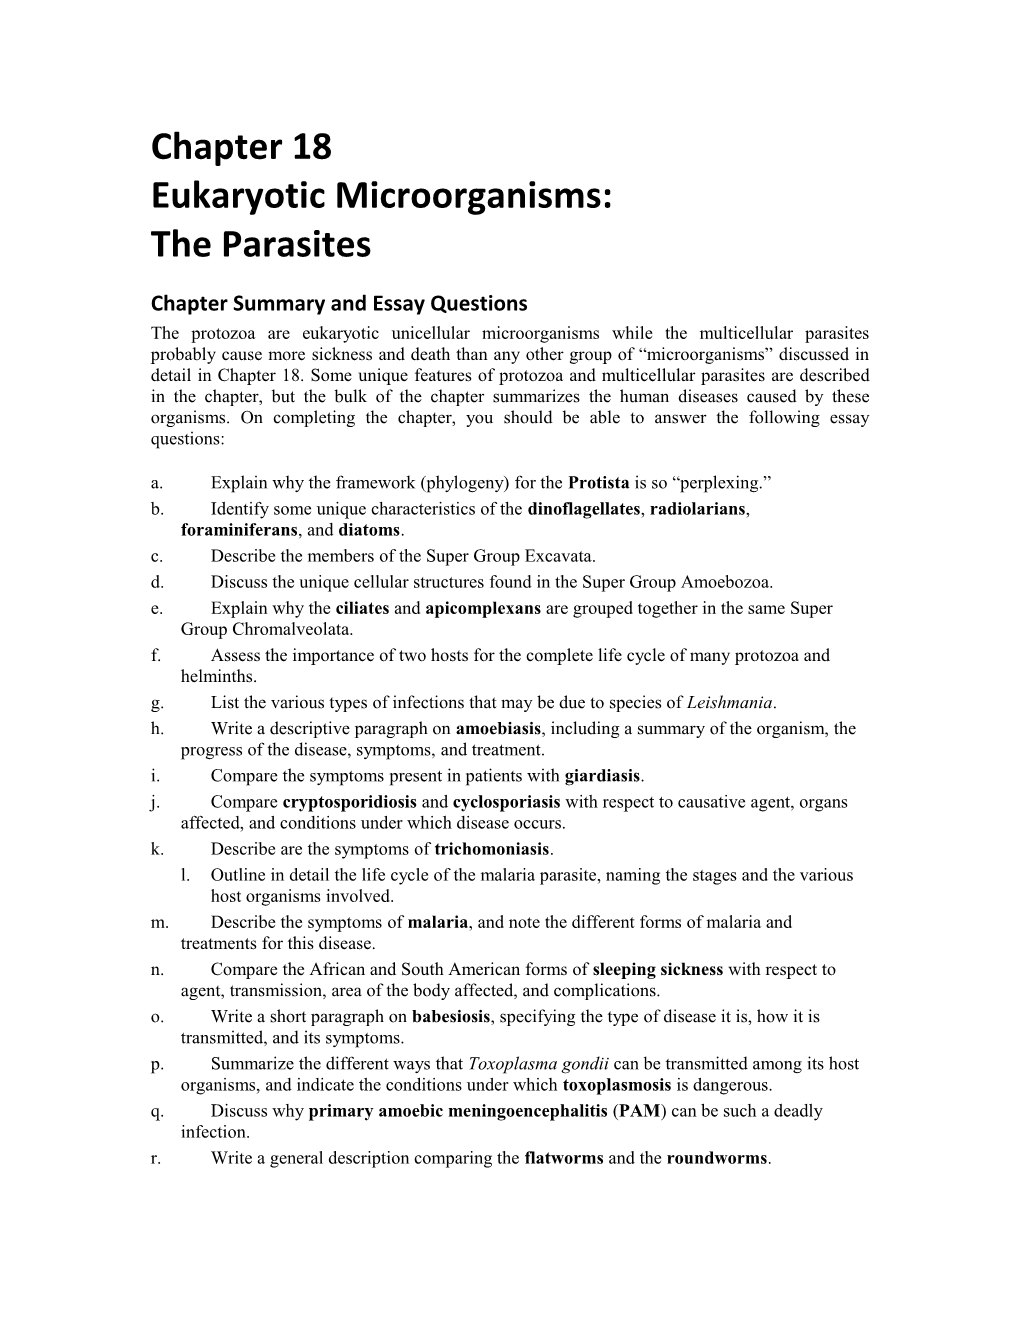 Eukaryotic Microorganisms